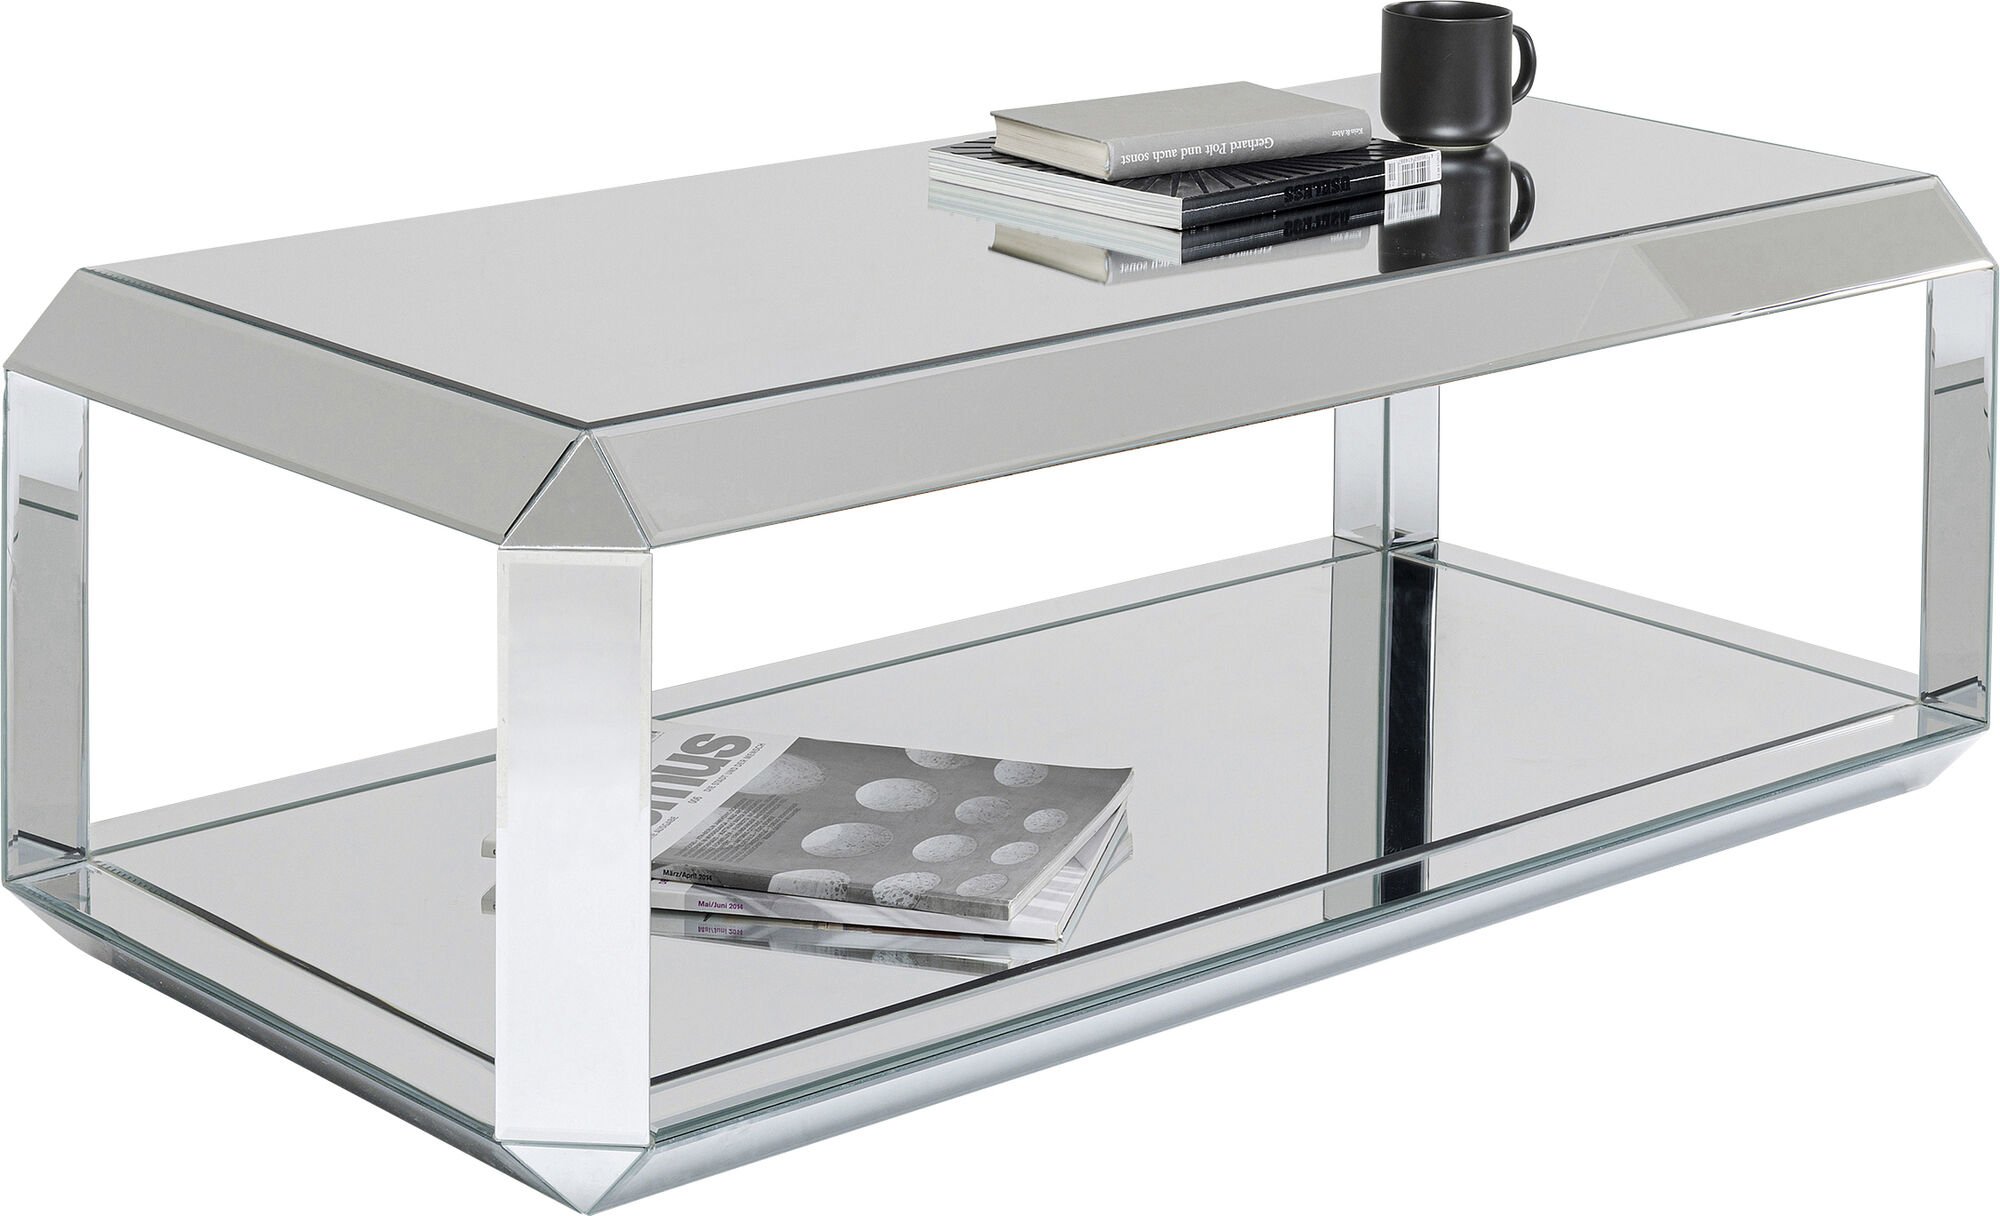 Verspiegelter Couchtisch Luxury Lia 121x61 Luxus Design Spiegeltisch Tisch Spiegel Möbel Geschäft Laden Wohnzimmer exklusives Möbeldesign